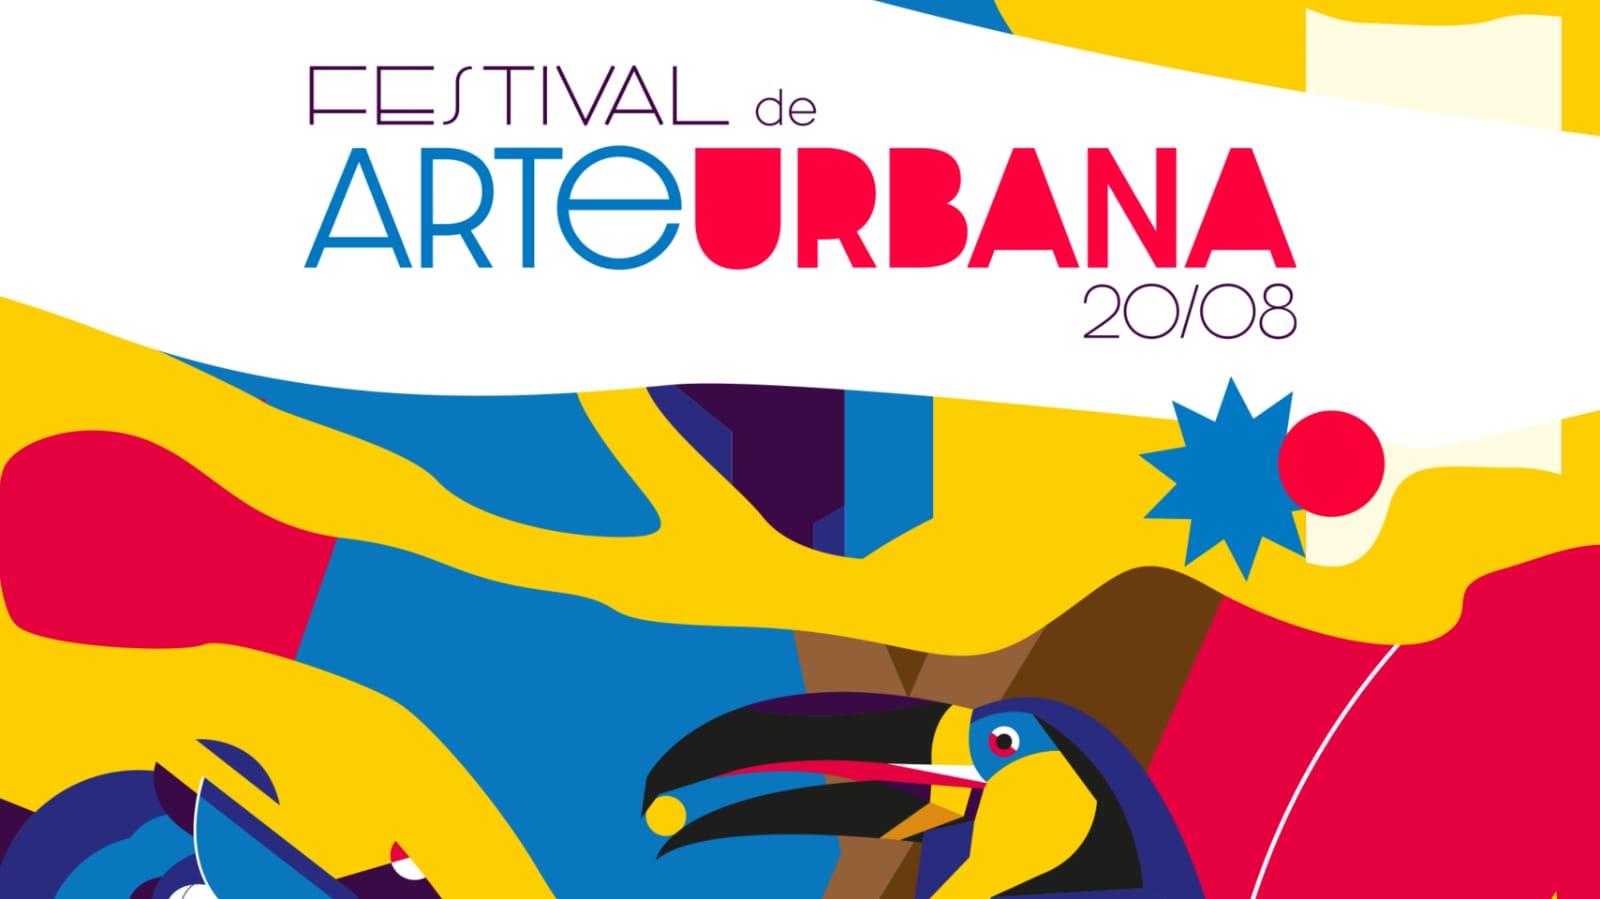 Sunset Festival de Arte Urbana terá 14 artistas goianos fazendo pinturas murais em Goiânia